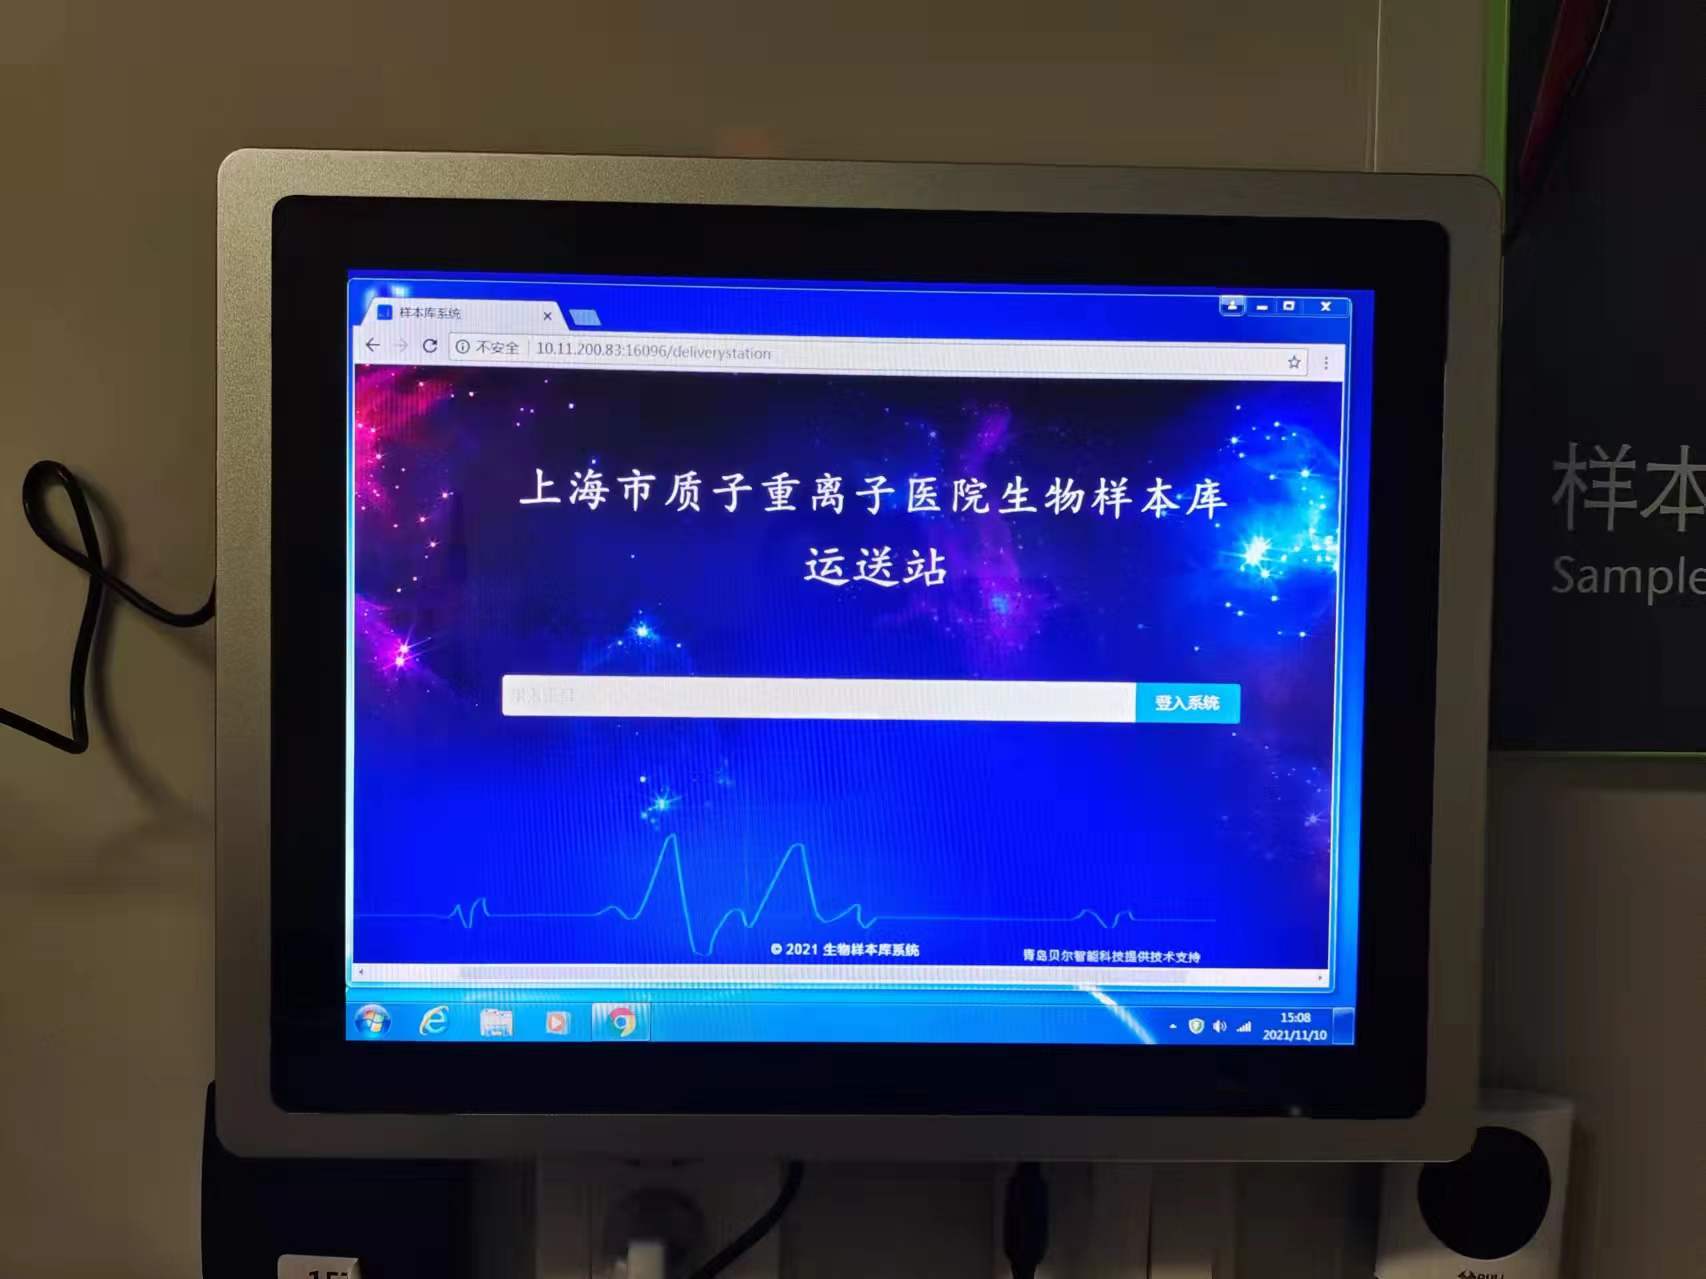 上海市质子重离子医院选择BEOL贝尔科技生物样本库管理软件保存生物样本22.5.13